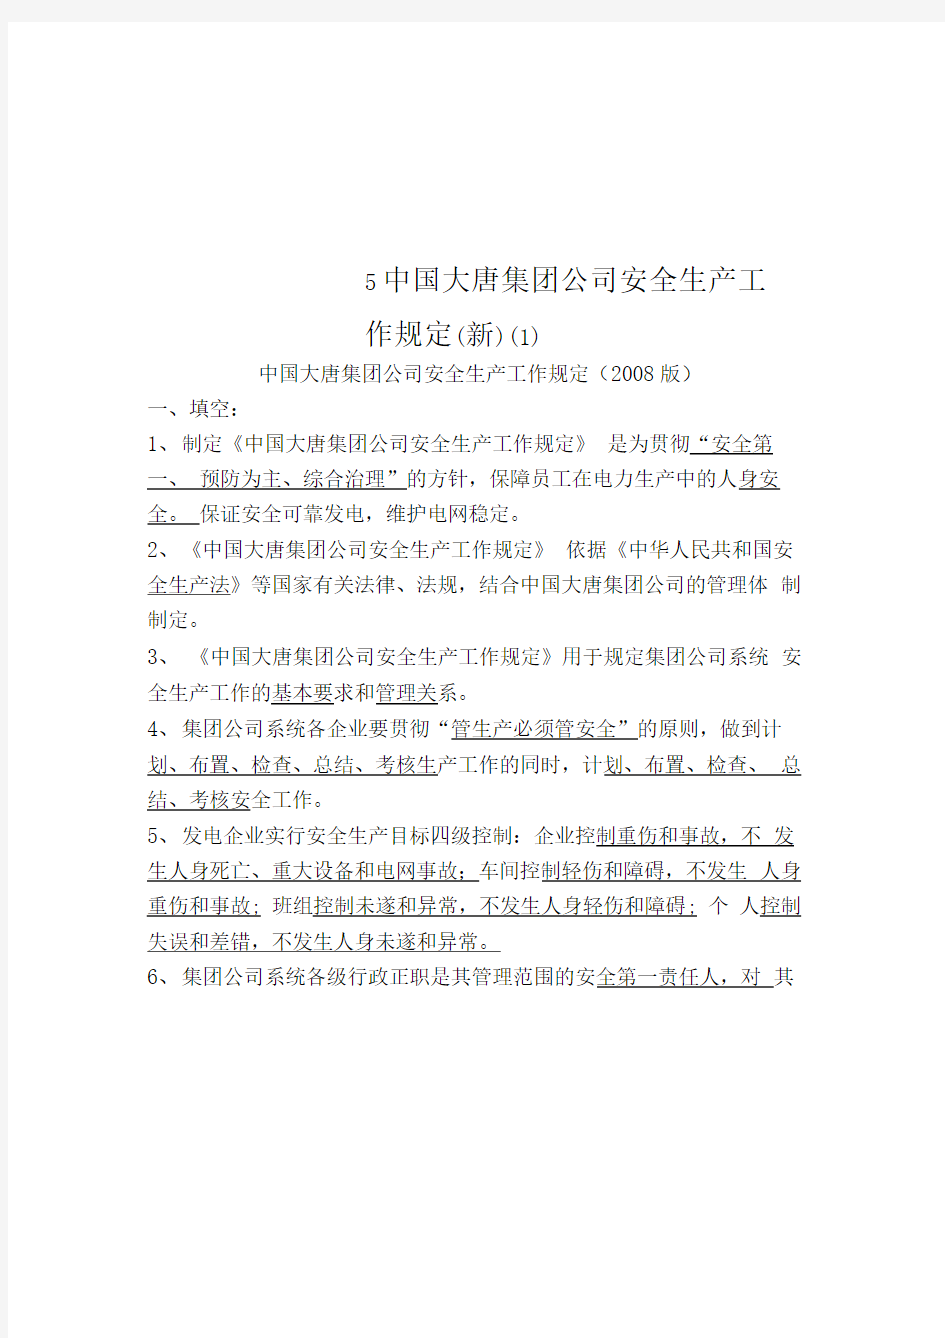 5中国大唐集团公司安全生产工作规定(新)(1)